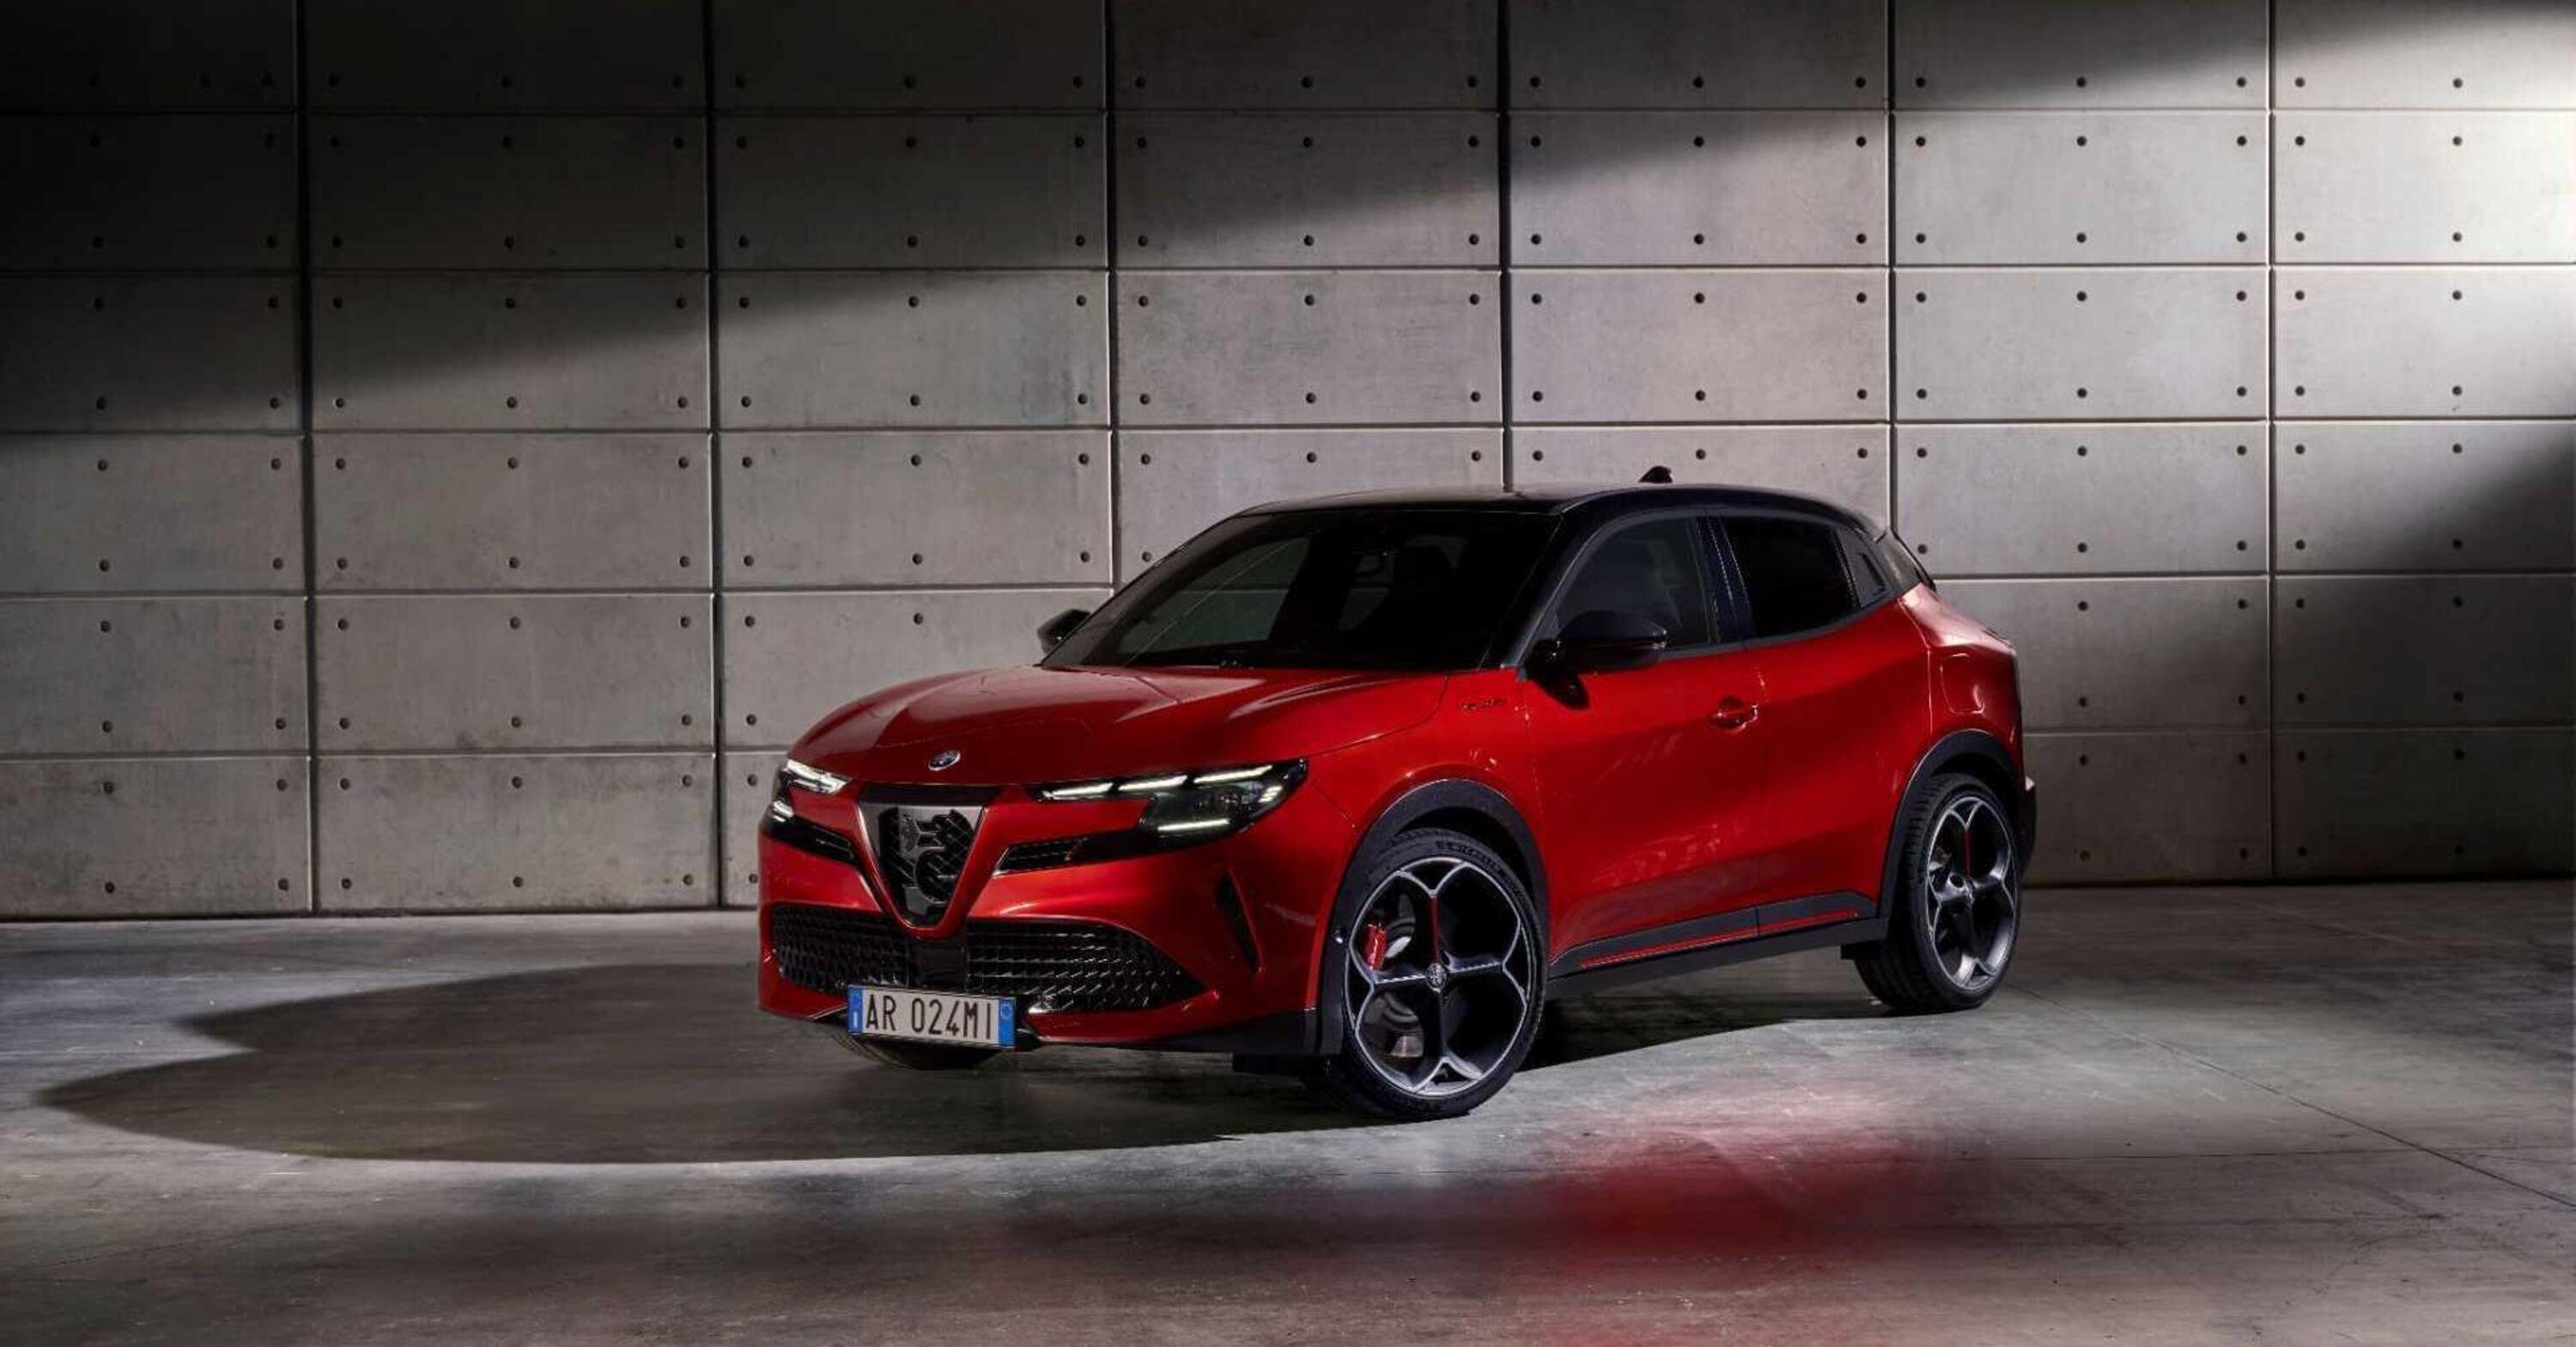 Alfa Romeo Milano: sarebbe costata 10.000 euro in pi&ugrave; se fatta in Italia  